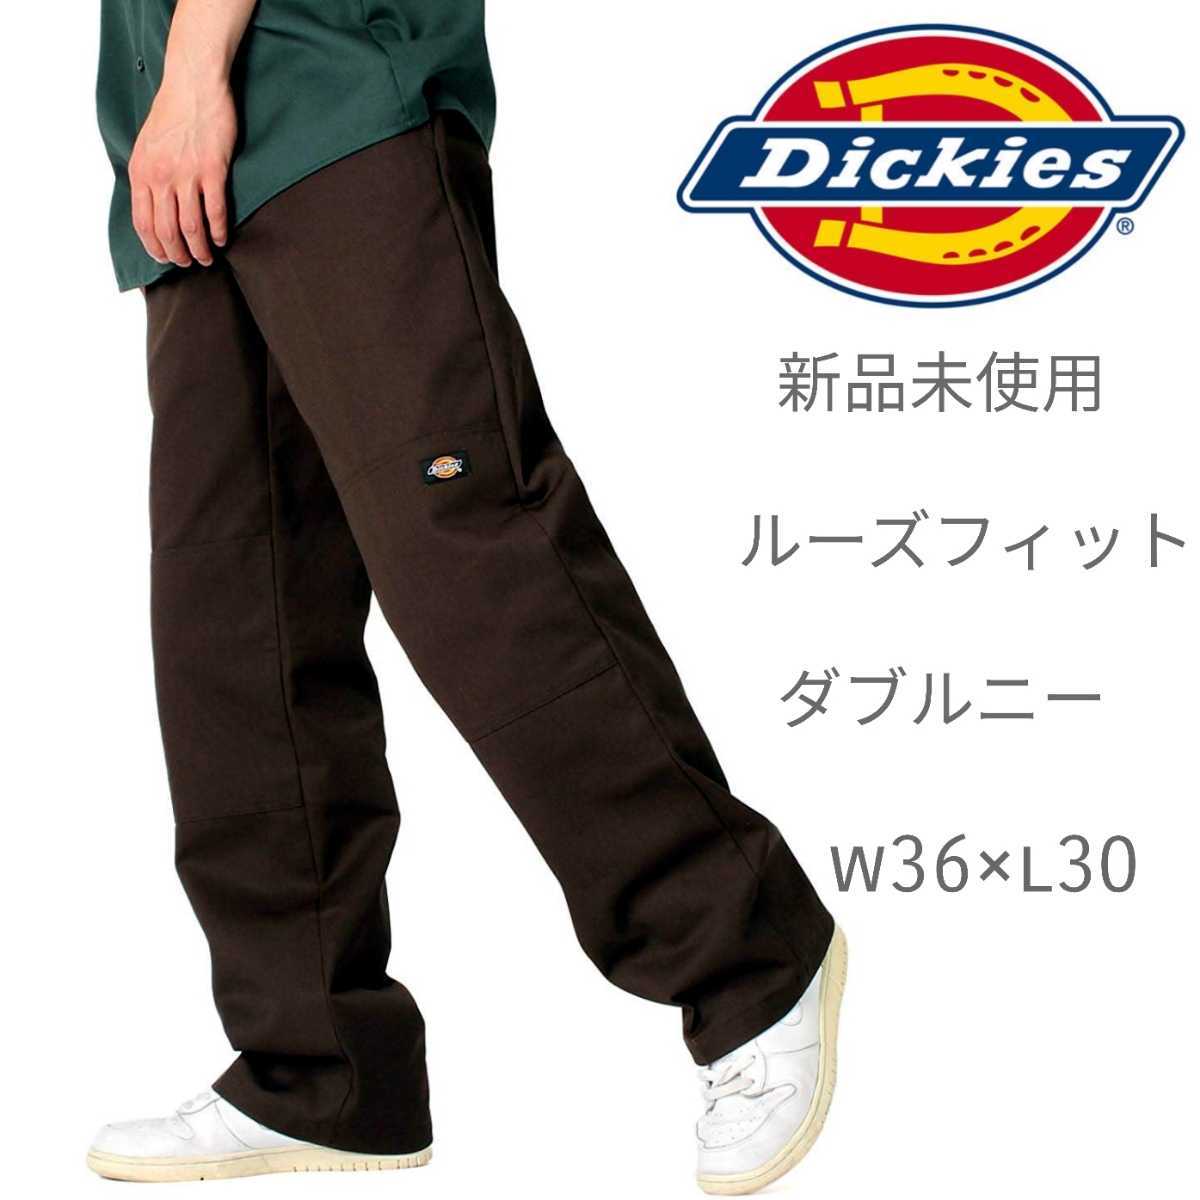 パンツ Dickies W30xL32 裾破れあり DseTX-m47824424025 ディッキーズ ダブルニー ブランド -  leandroteles.com.br